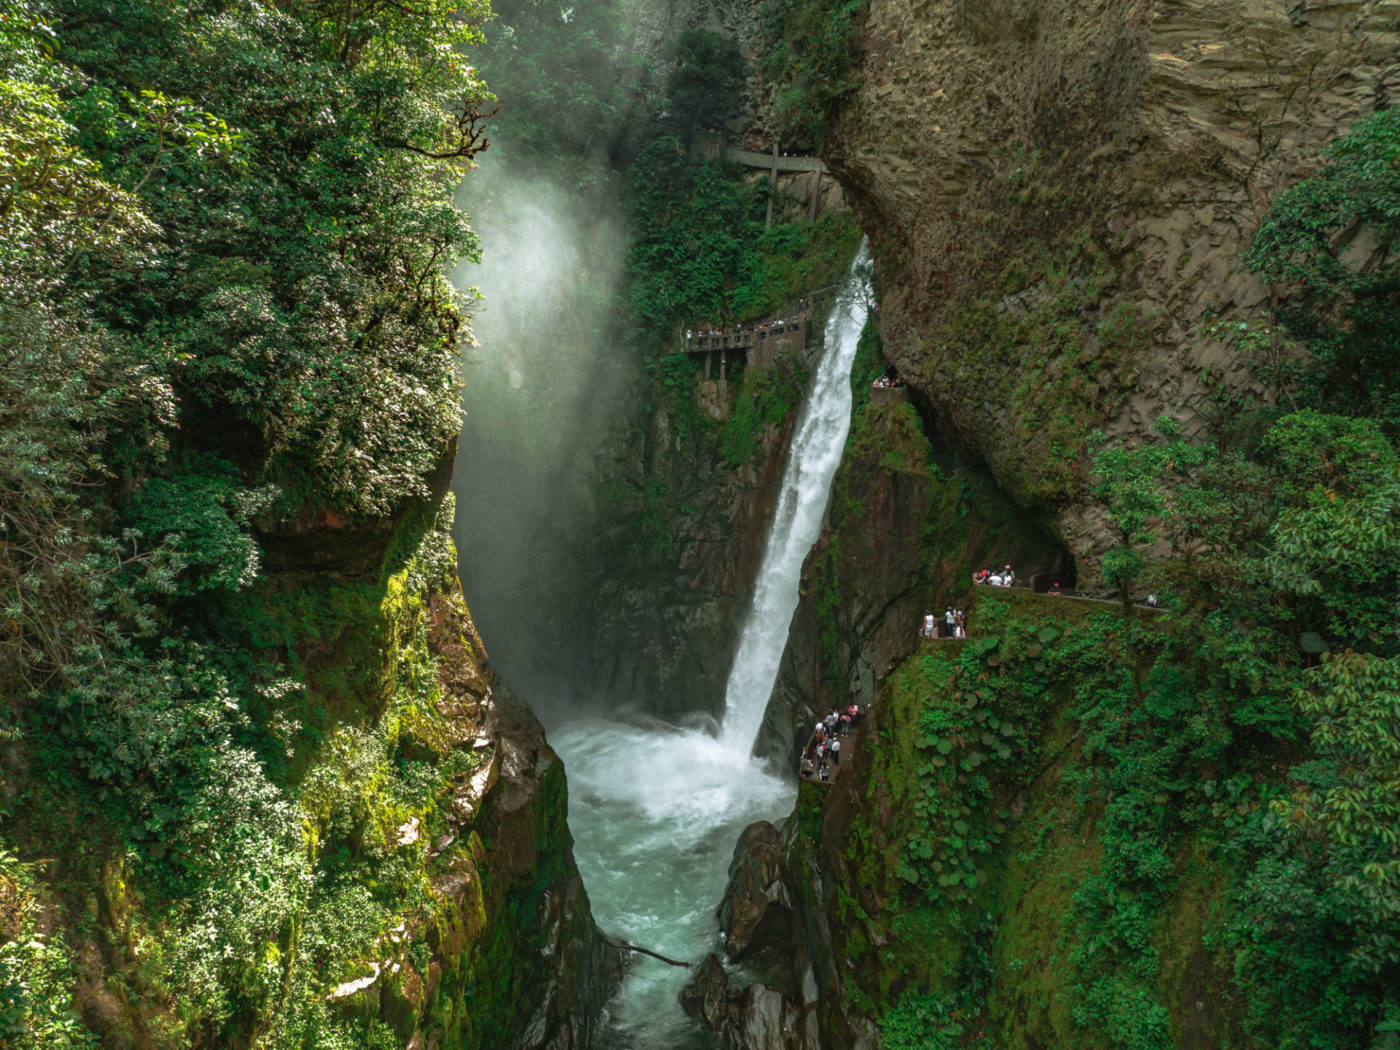 Ecuador Banos Cascada El Pailon del Diablo waterfall 0265